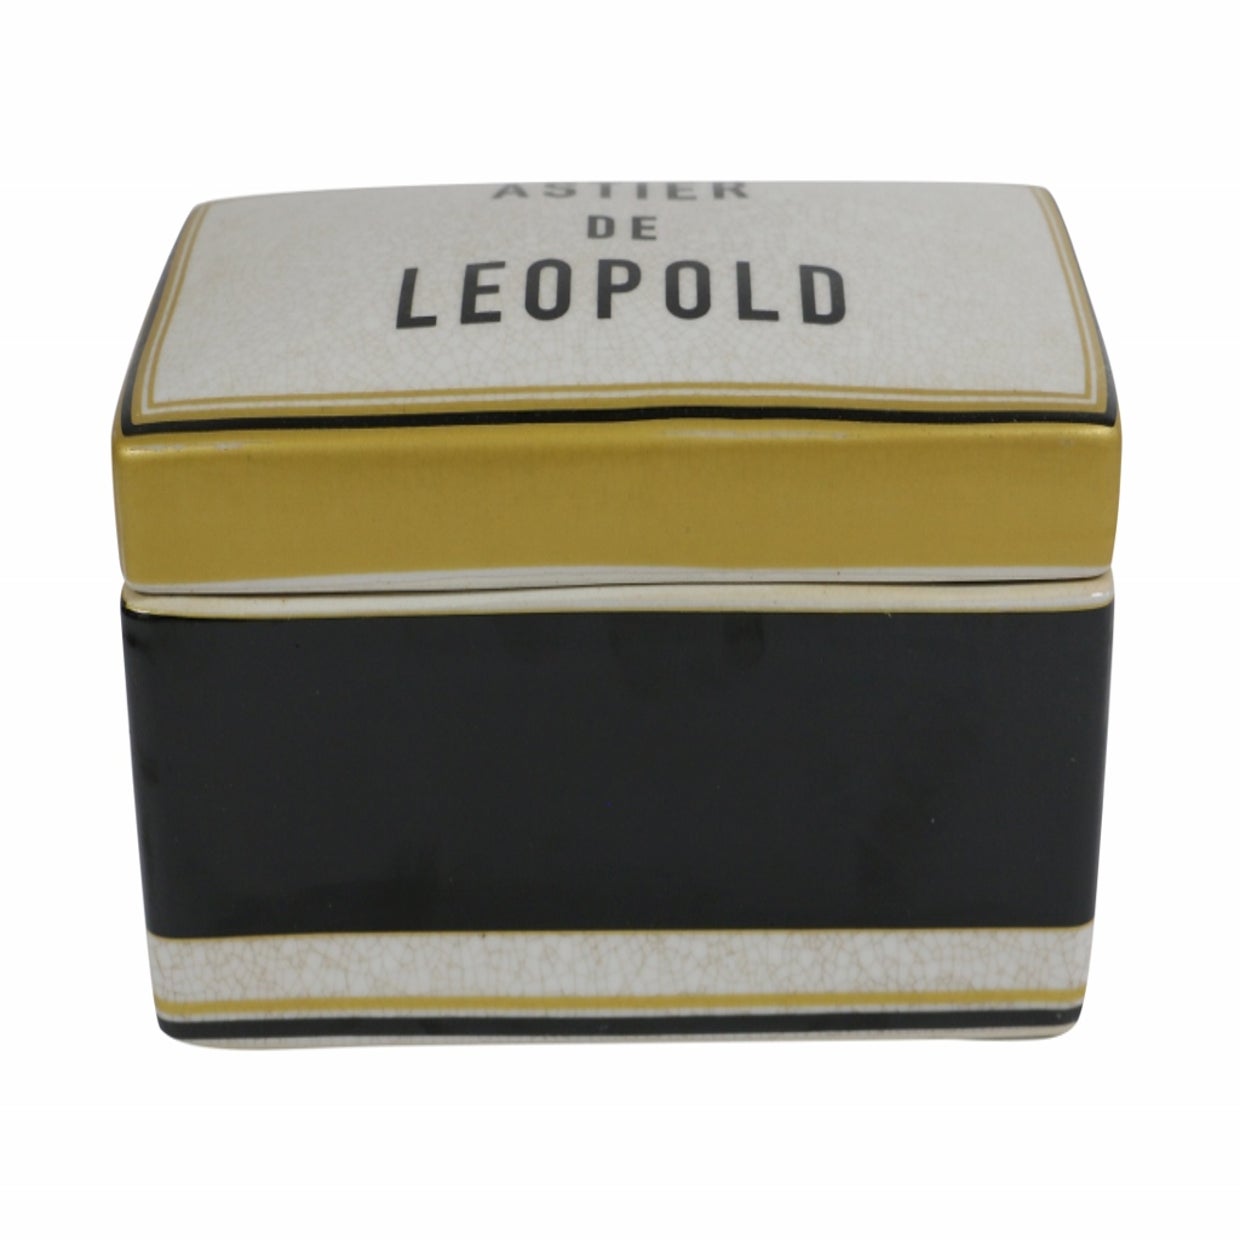 ASTIER DE LEOPOLD LARGE BOX AUTUM SPECIAL